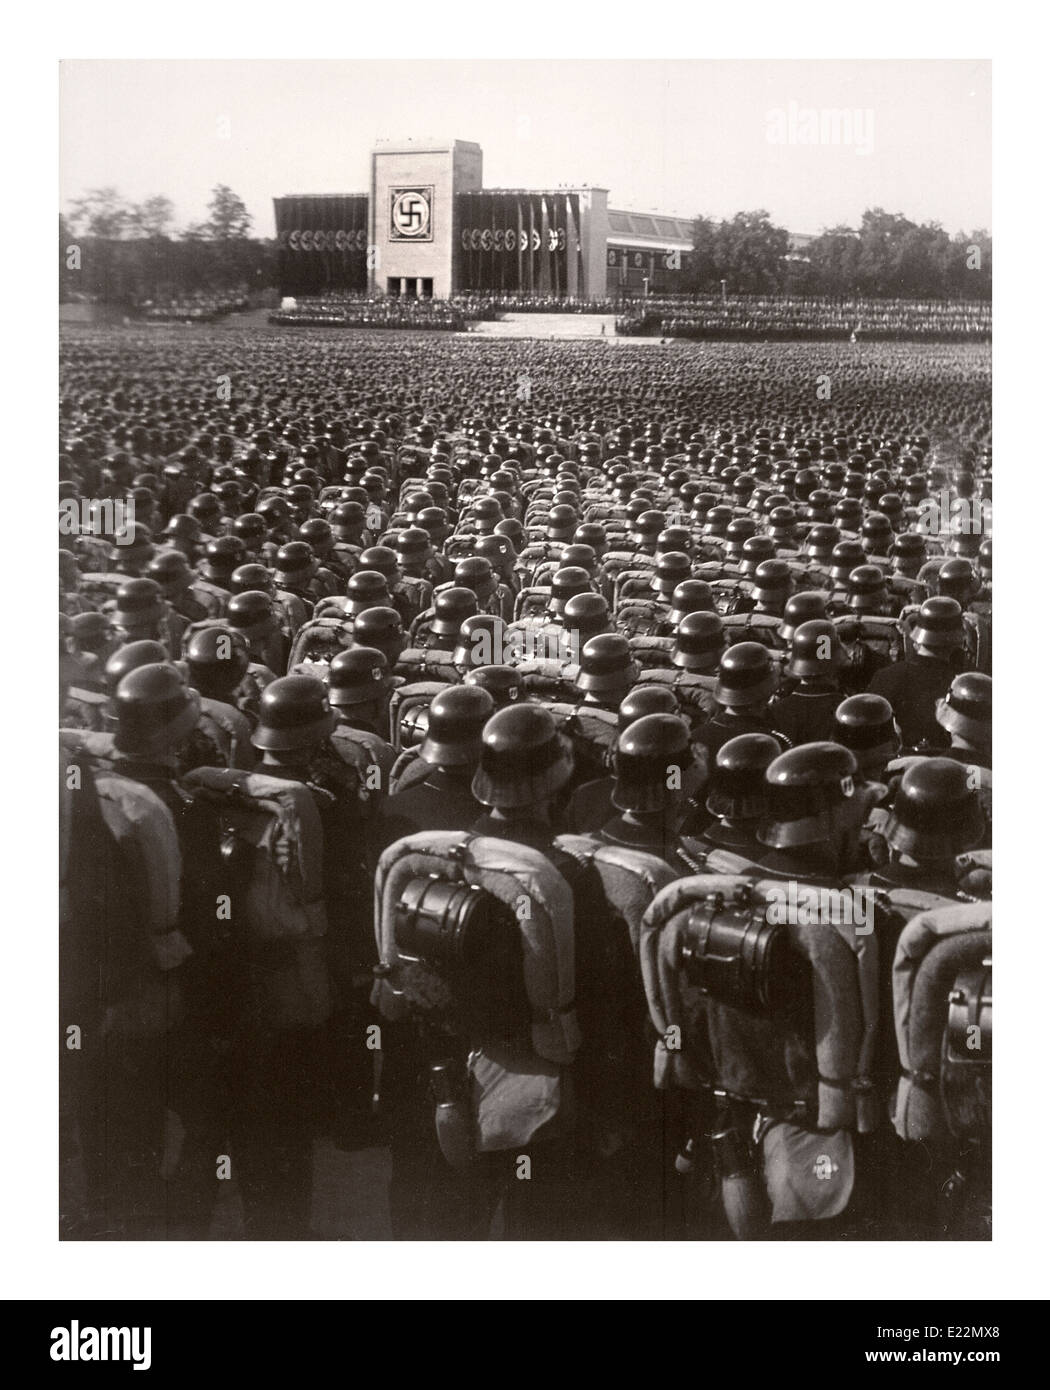 Nuremberg 1930 troupes Waffen SS portant des casques poli en rangs serrées précise à l'article militaires durant un rassemblement nazi allemand, avant la Deuxième Guerre mondiale Banque D'Images